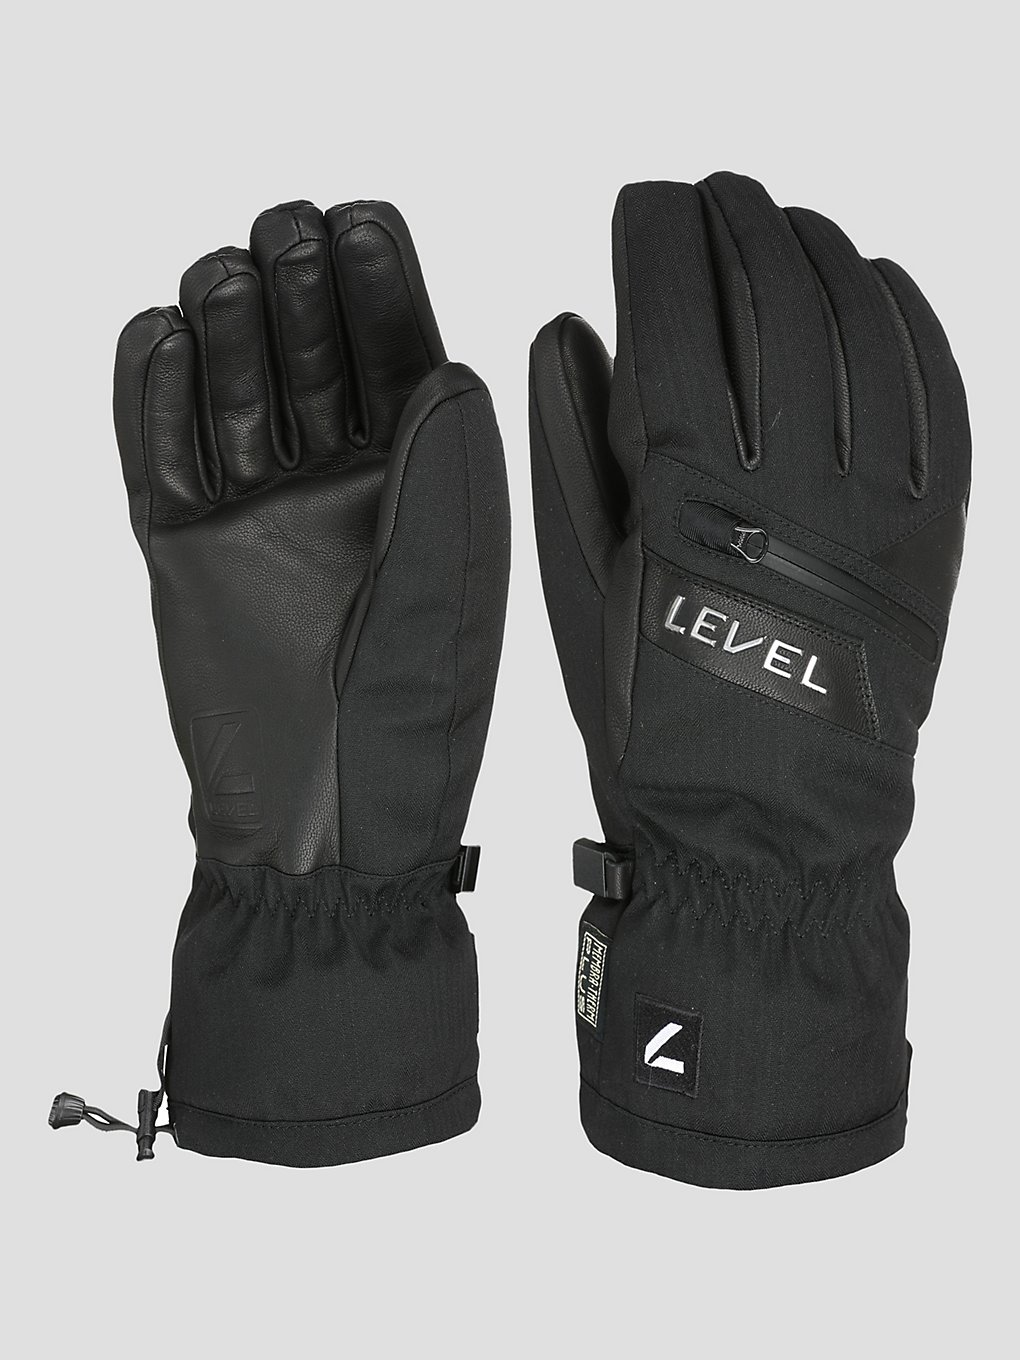 Level Switchback Handschuhe black kaufen